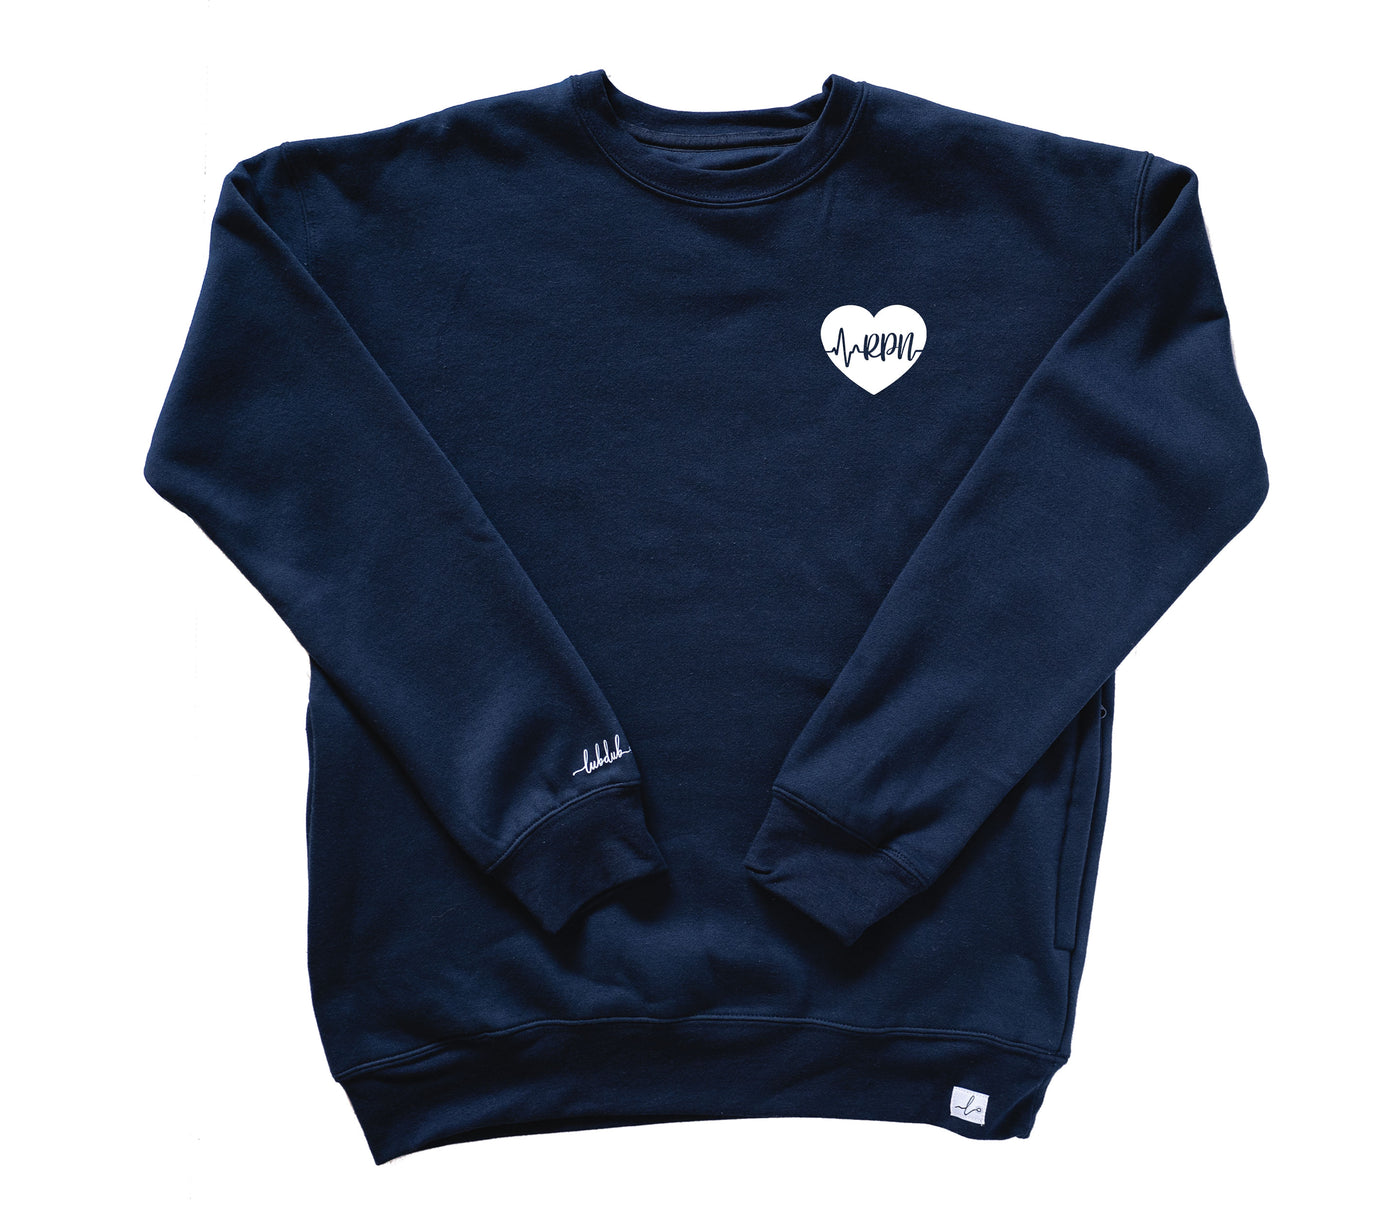 RPN ECG Heart - Pocketed Crew Sweatshirt